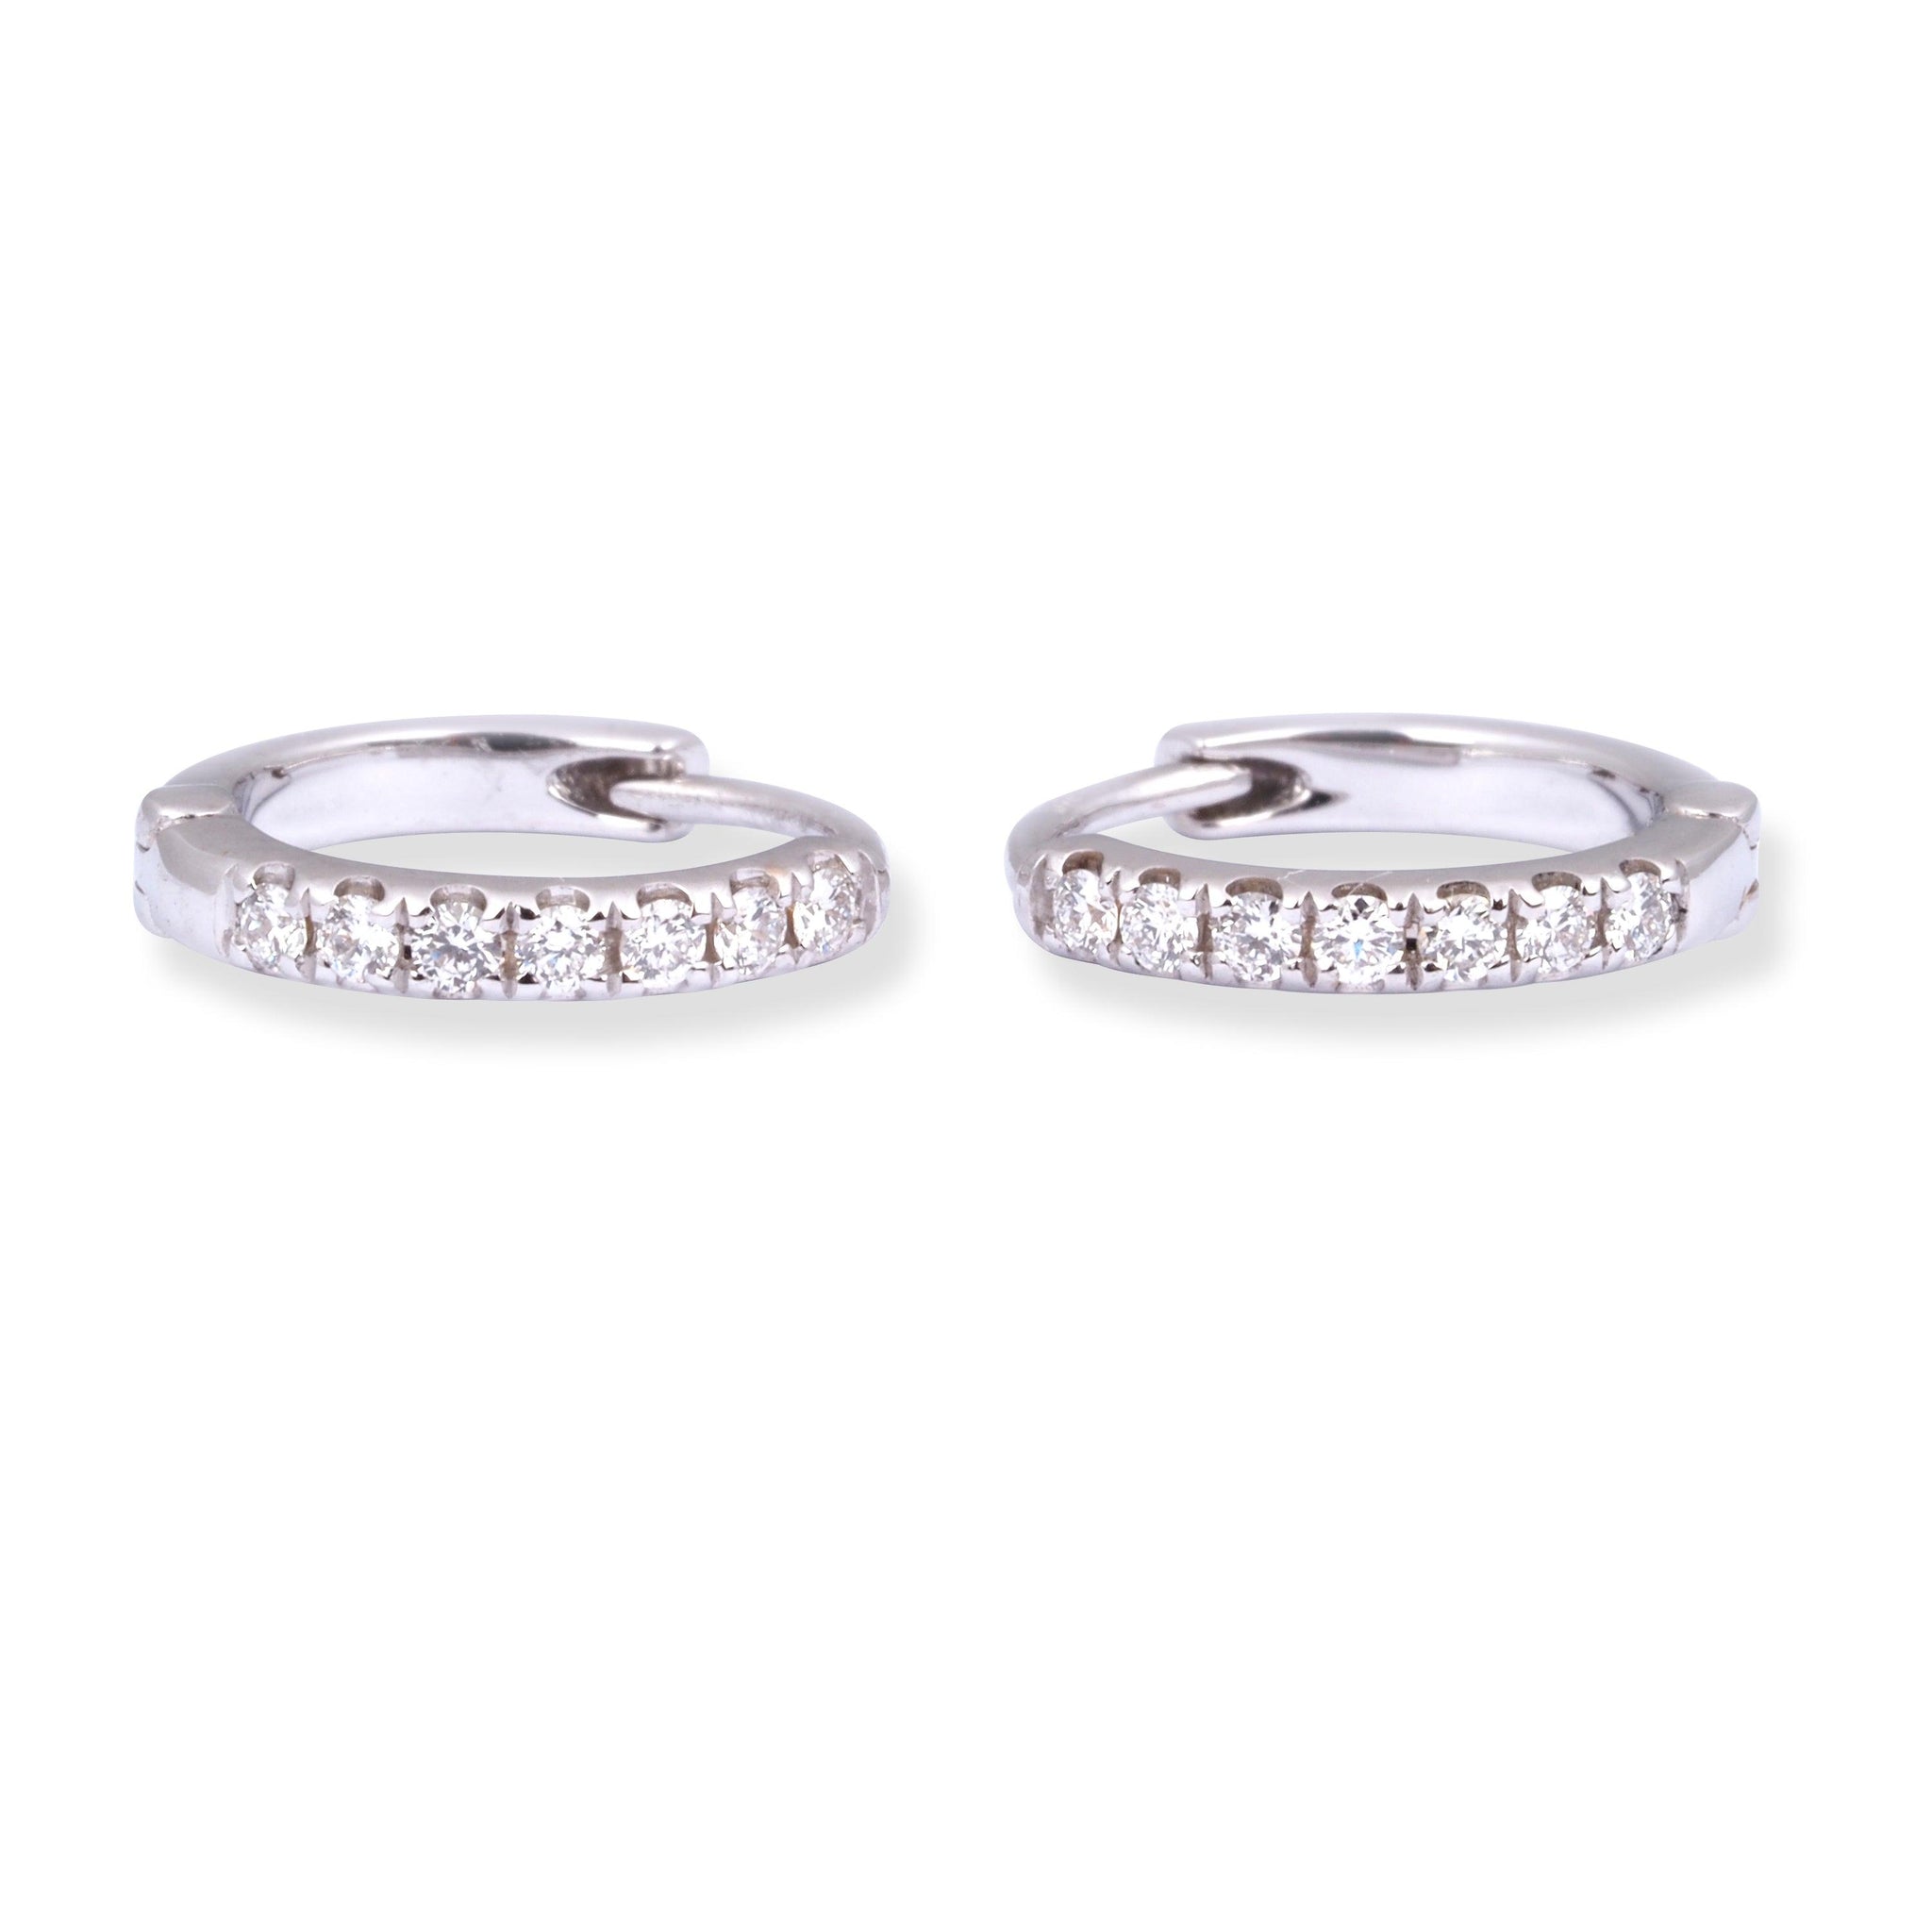 18ct White Gold Huggie Hoop Diamond Earrings E-8001